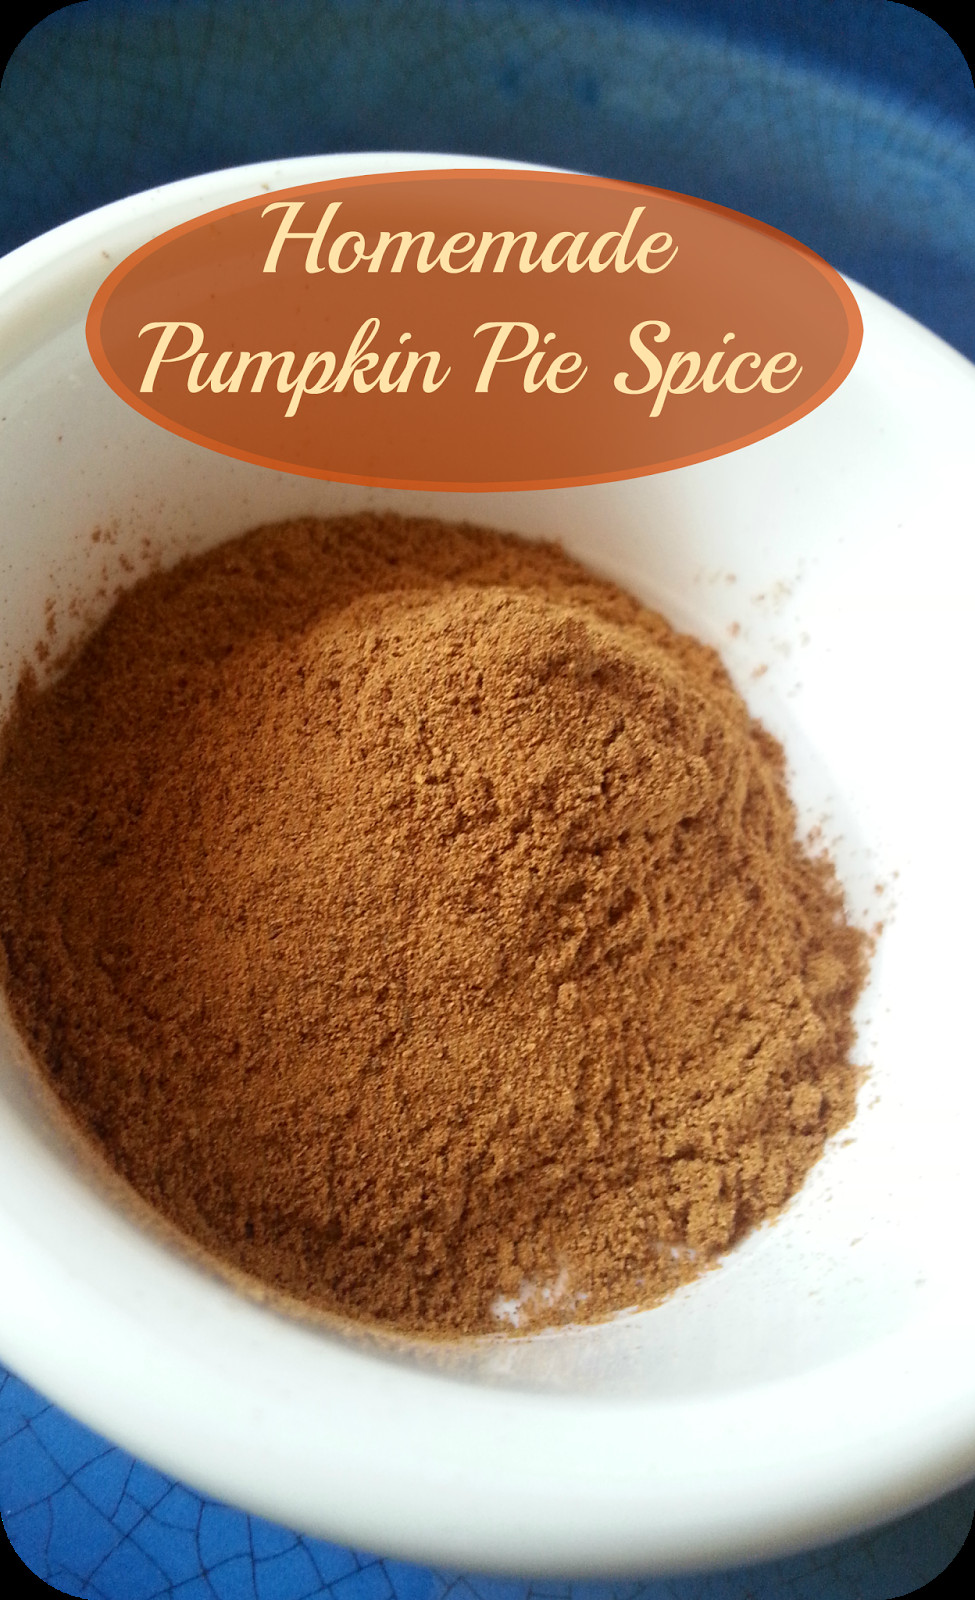 Diy Pumpkin Pie Spice
 The Better Baker Homemade Pumpkin Pie Spice & Apple Pie Spice